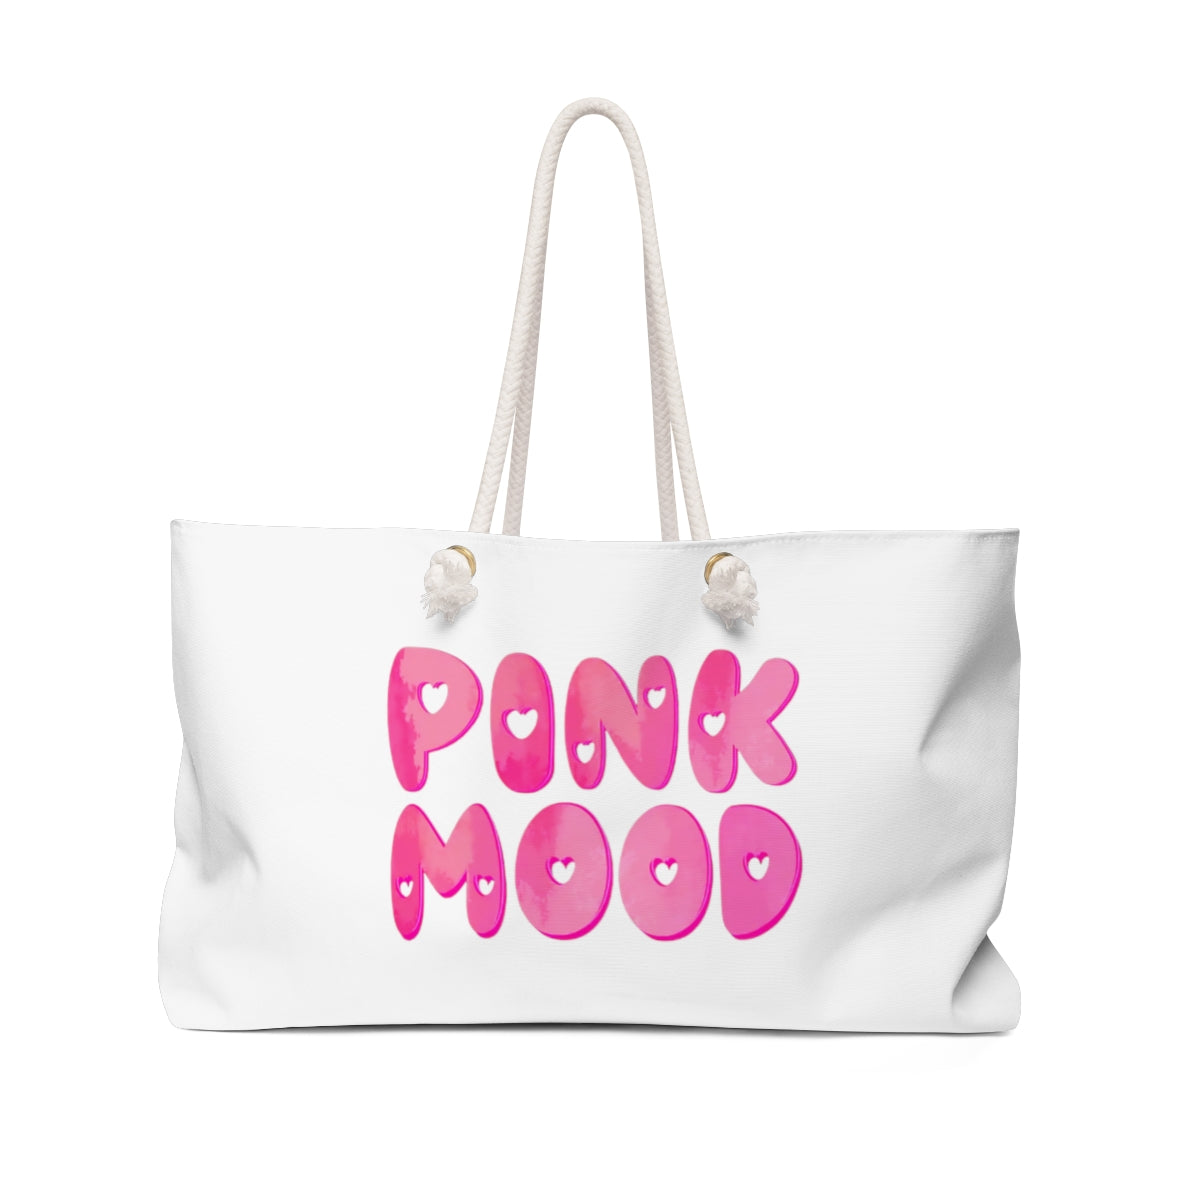 Hot Pink Color Weekender Bag, Solid Bright Pink Color 24x13 Designer  Modern Essential Market Large Tote Bag- Made in USA